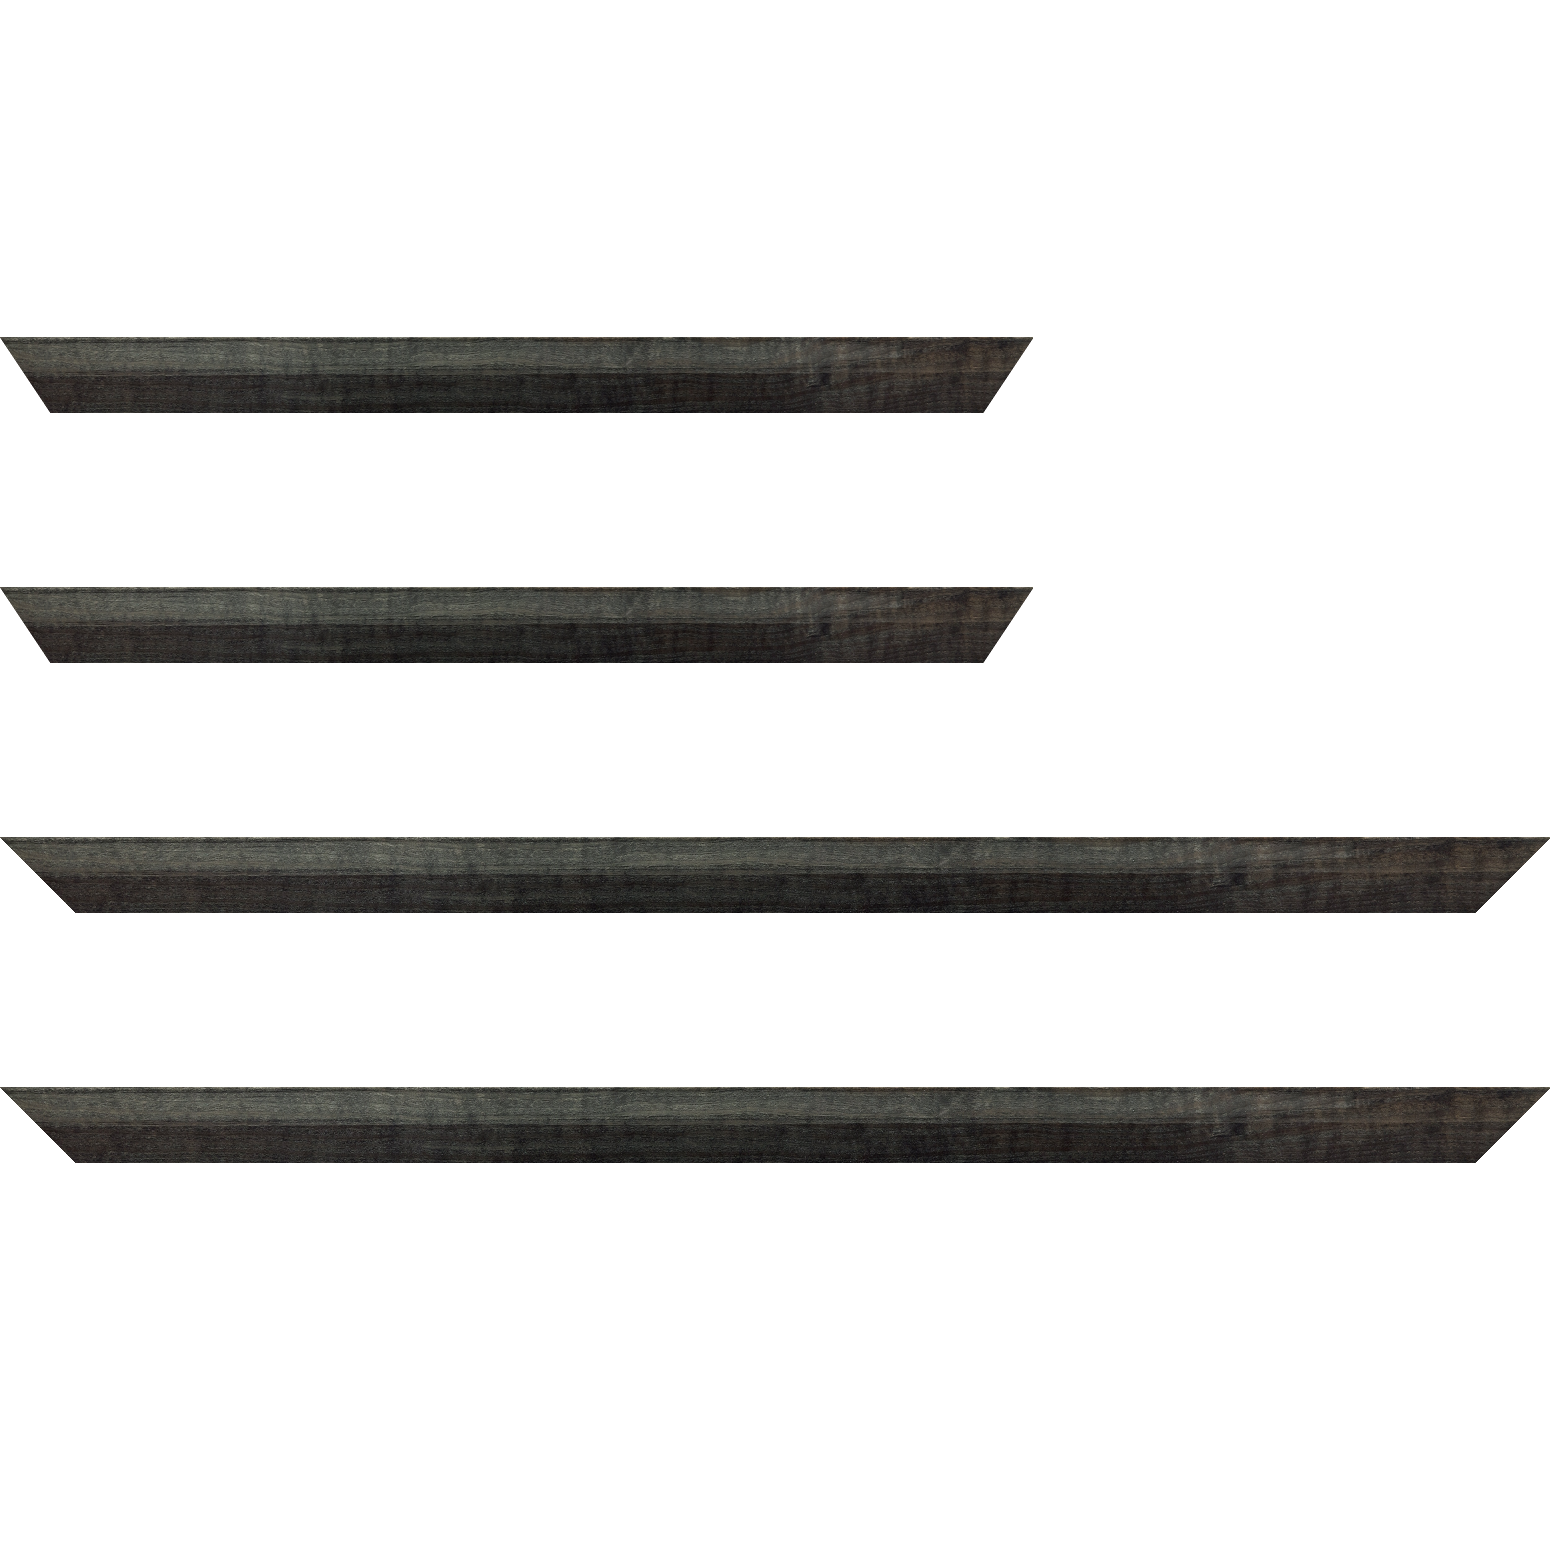 Baguette bois profil arrondi en pente plongeant largeur 2.4cm couleur  gris foncé anthracite finition vernis brillant,veine du bois  apparent (pin) , - 70x100